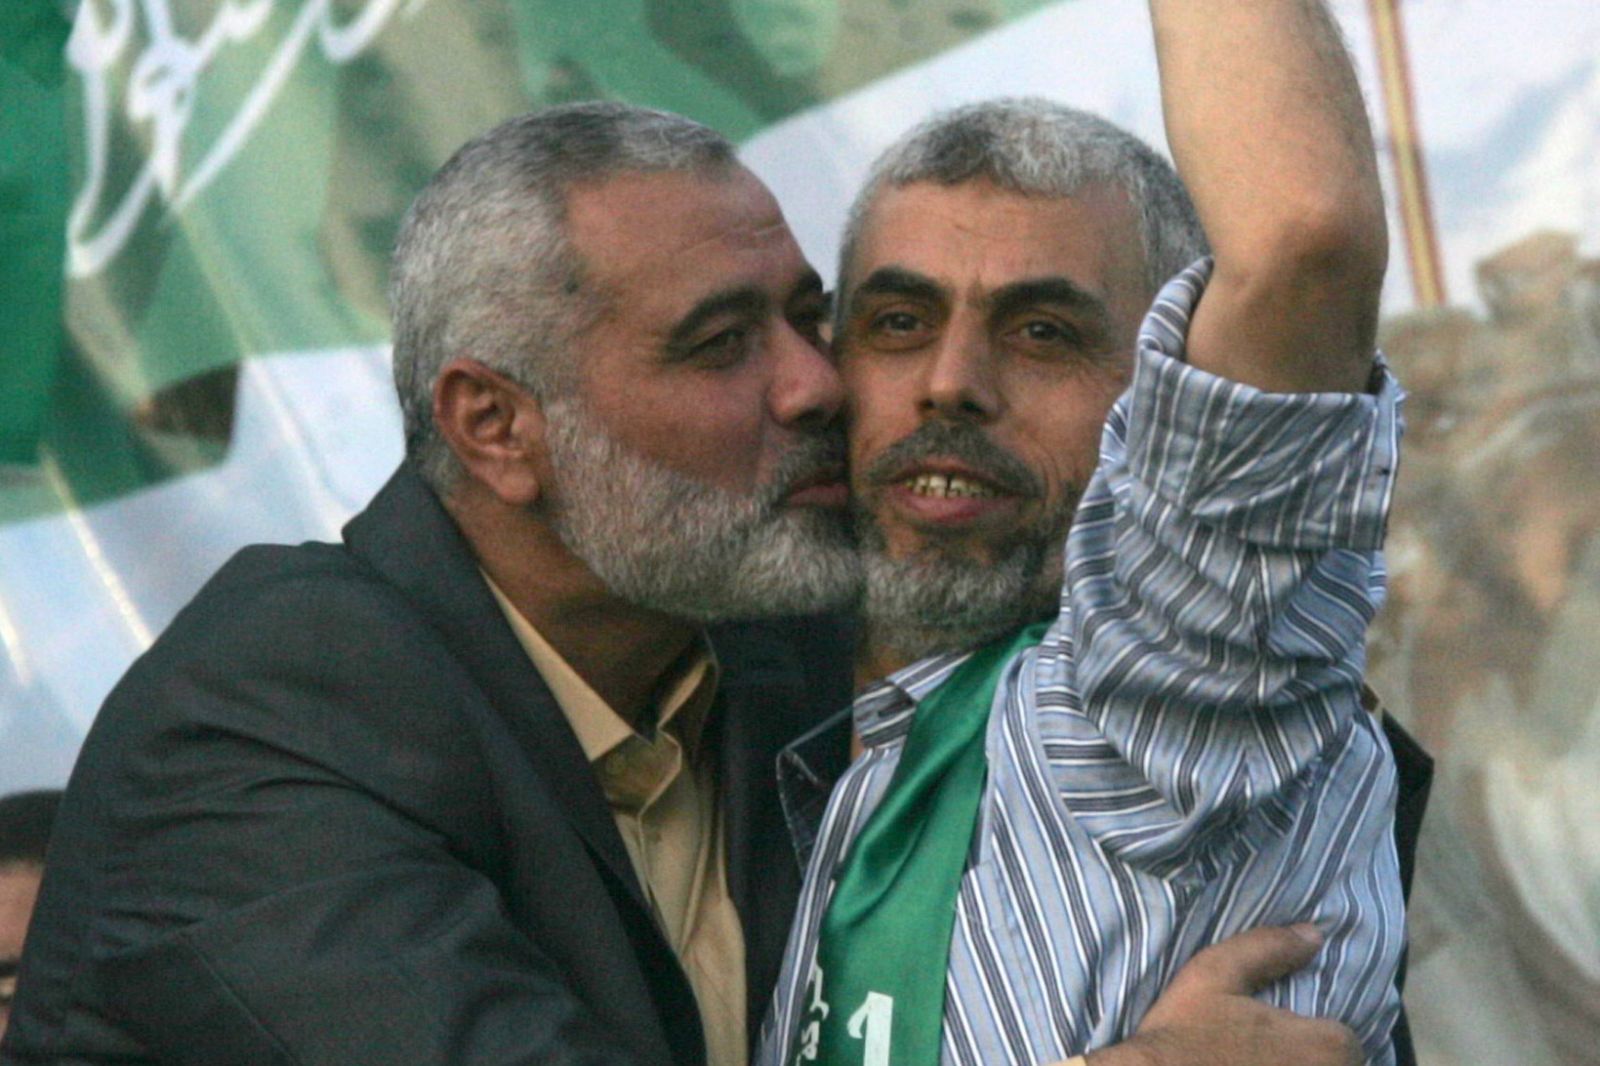 Sinwar Terpilih Jadi Pemimpin Hamas Di Gaza Gantikan Haniyah